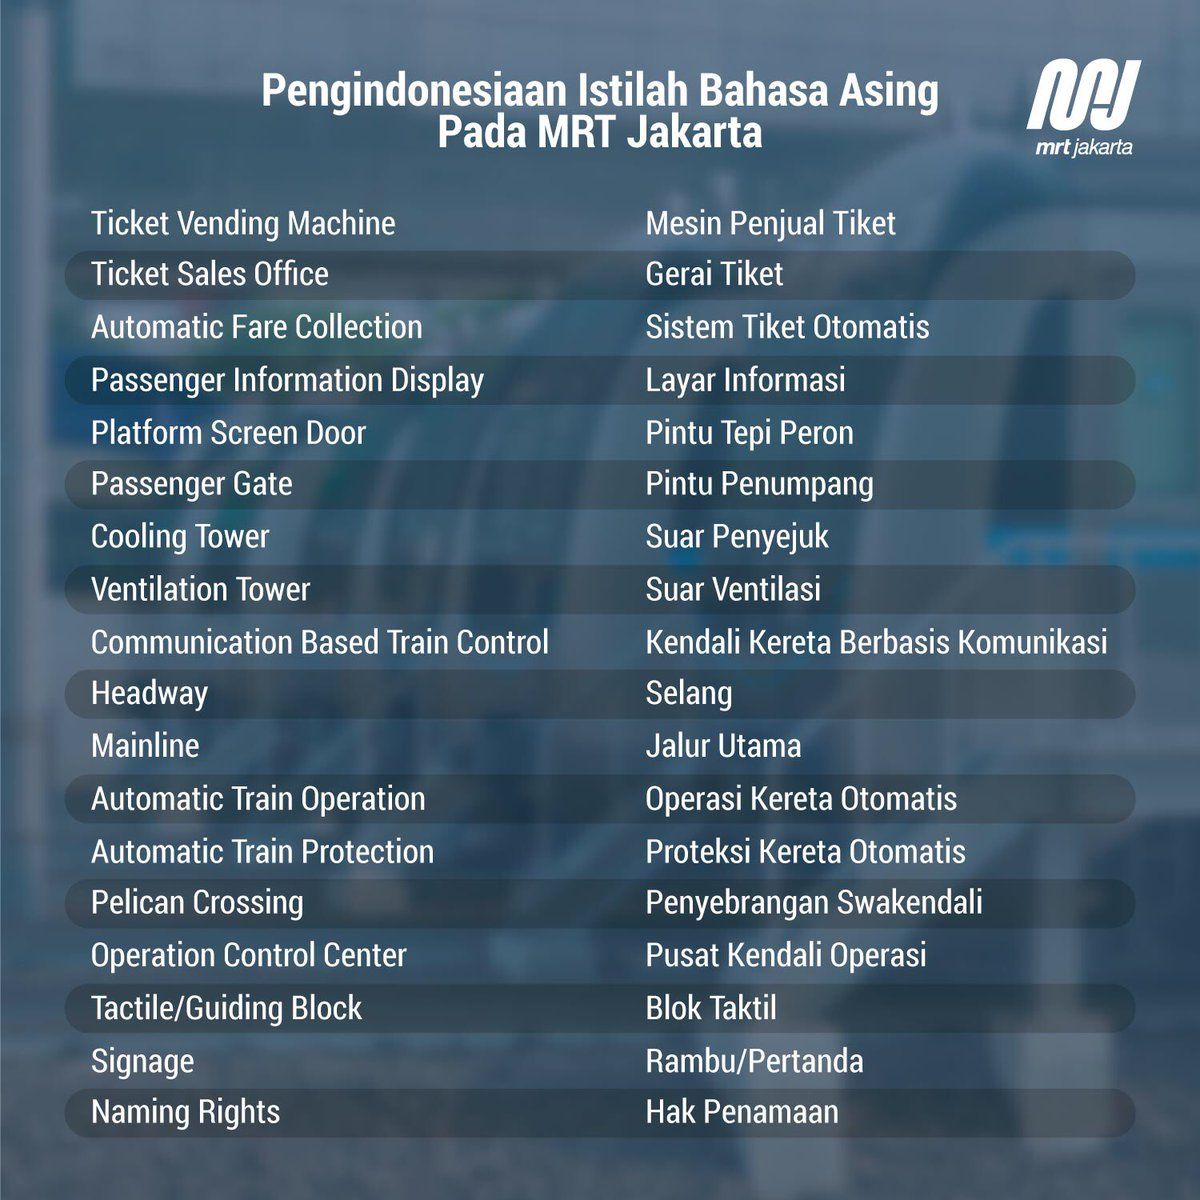 Upaya Pengindonesiaan Bahasa Asing oleh MRT Jakarta